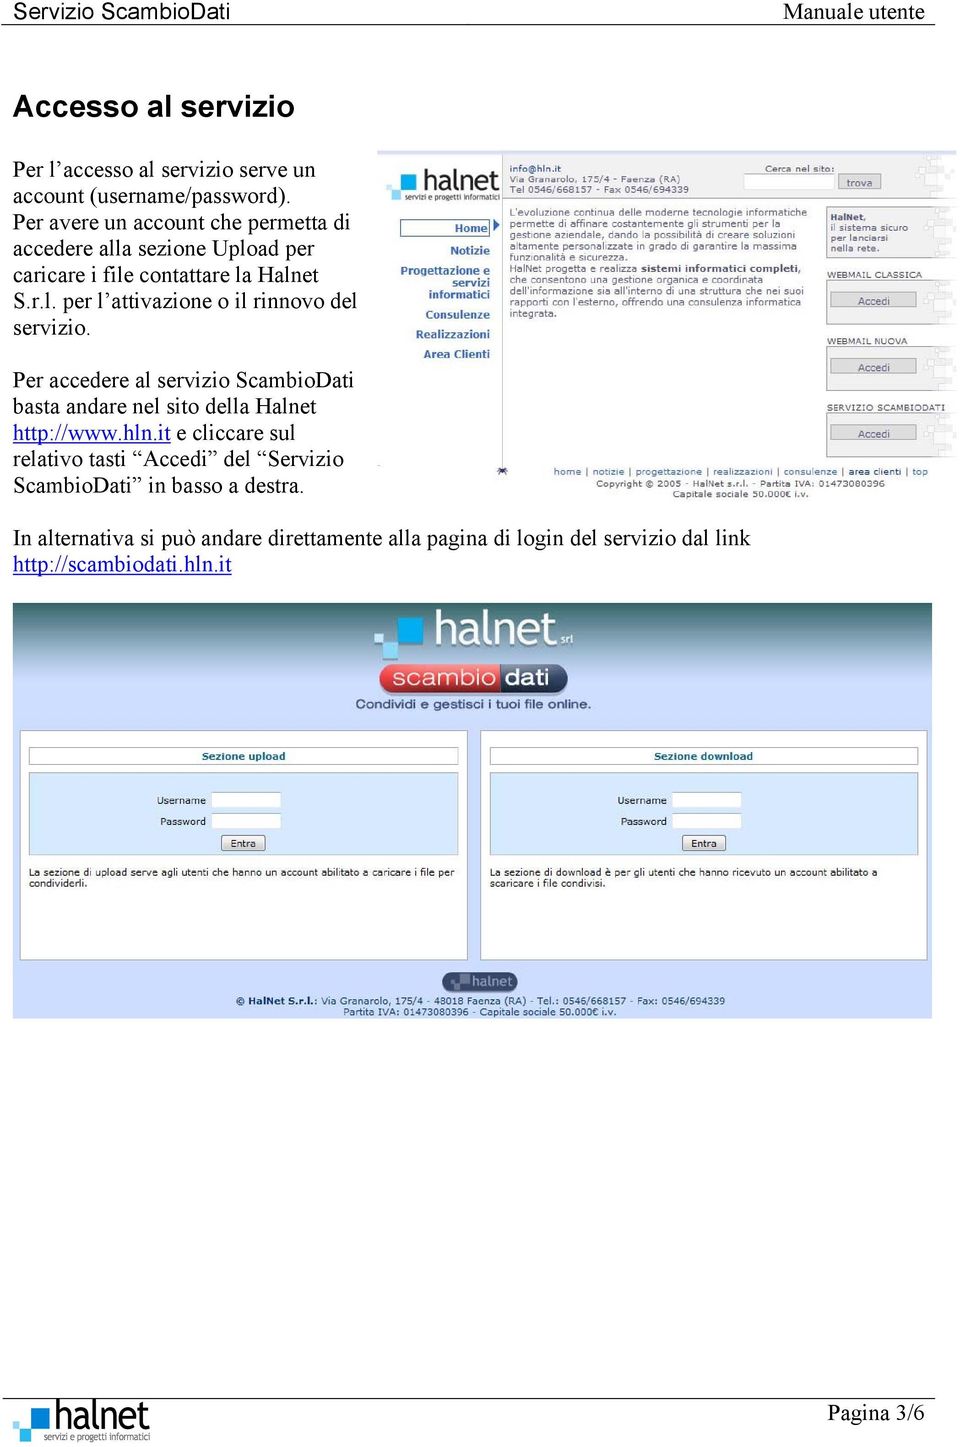 Per accedere al servizio ScambioDati basta andare nel sito della Halnet http://www.hln.